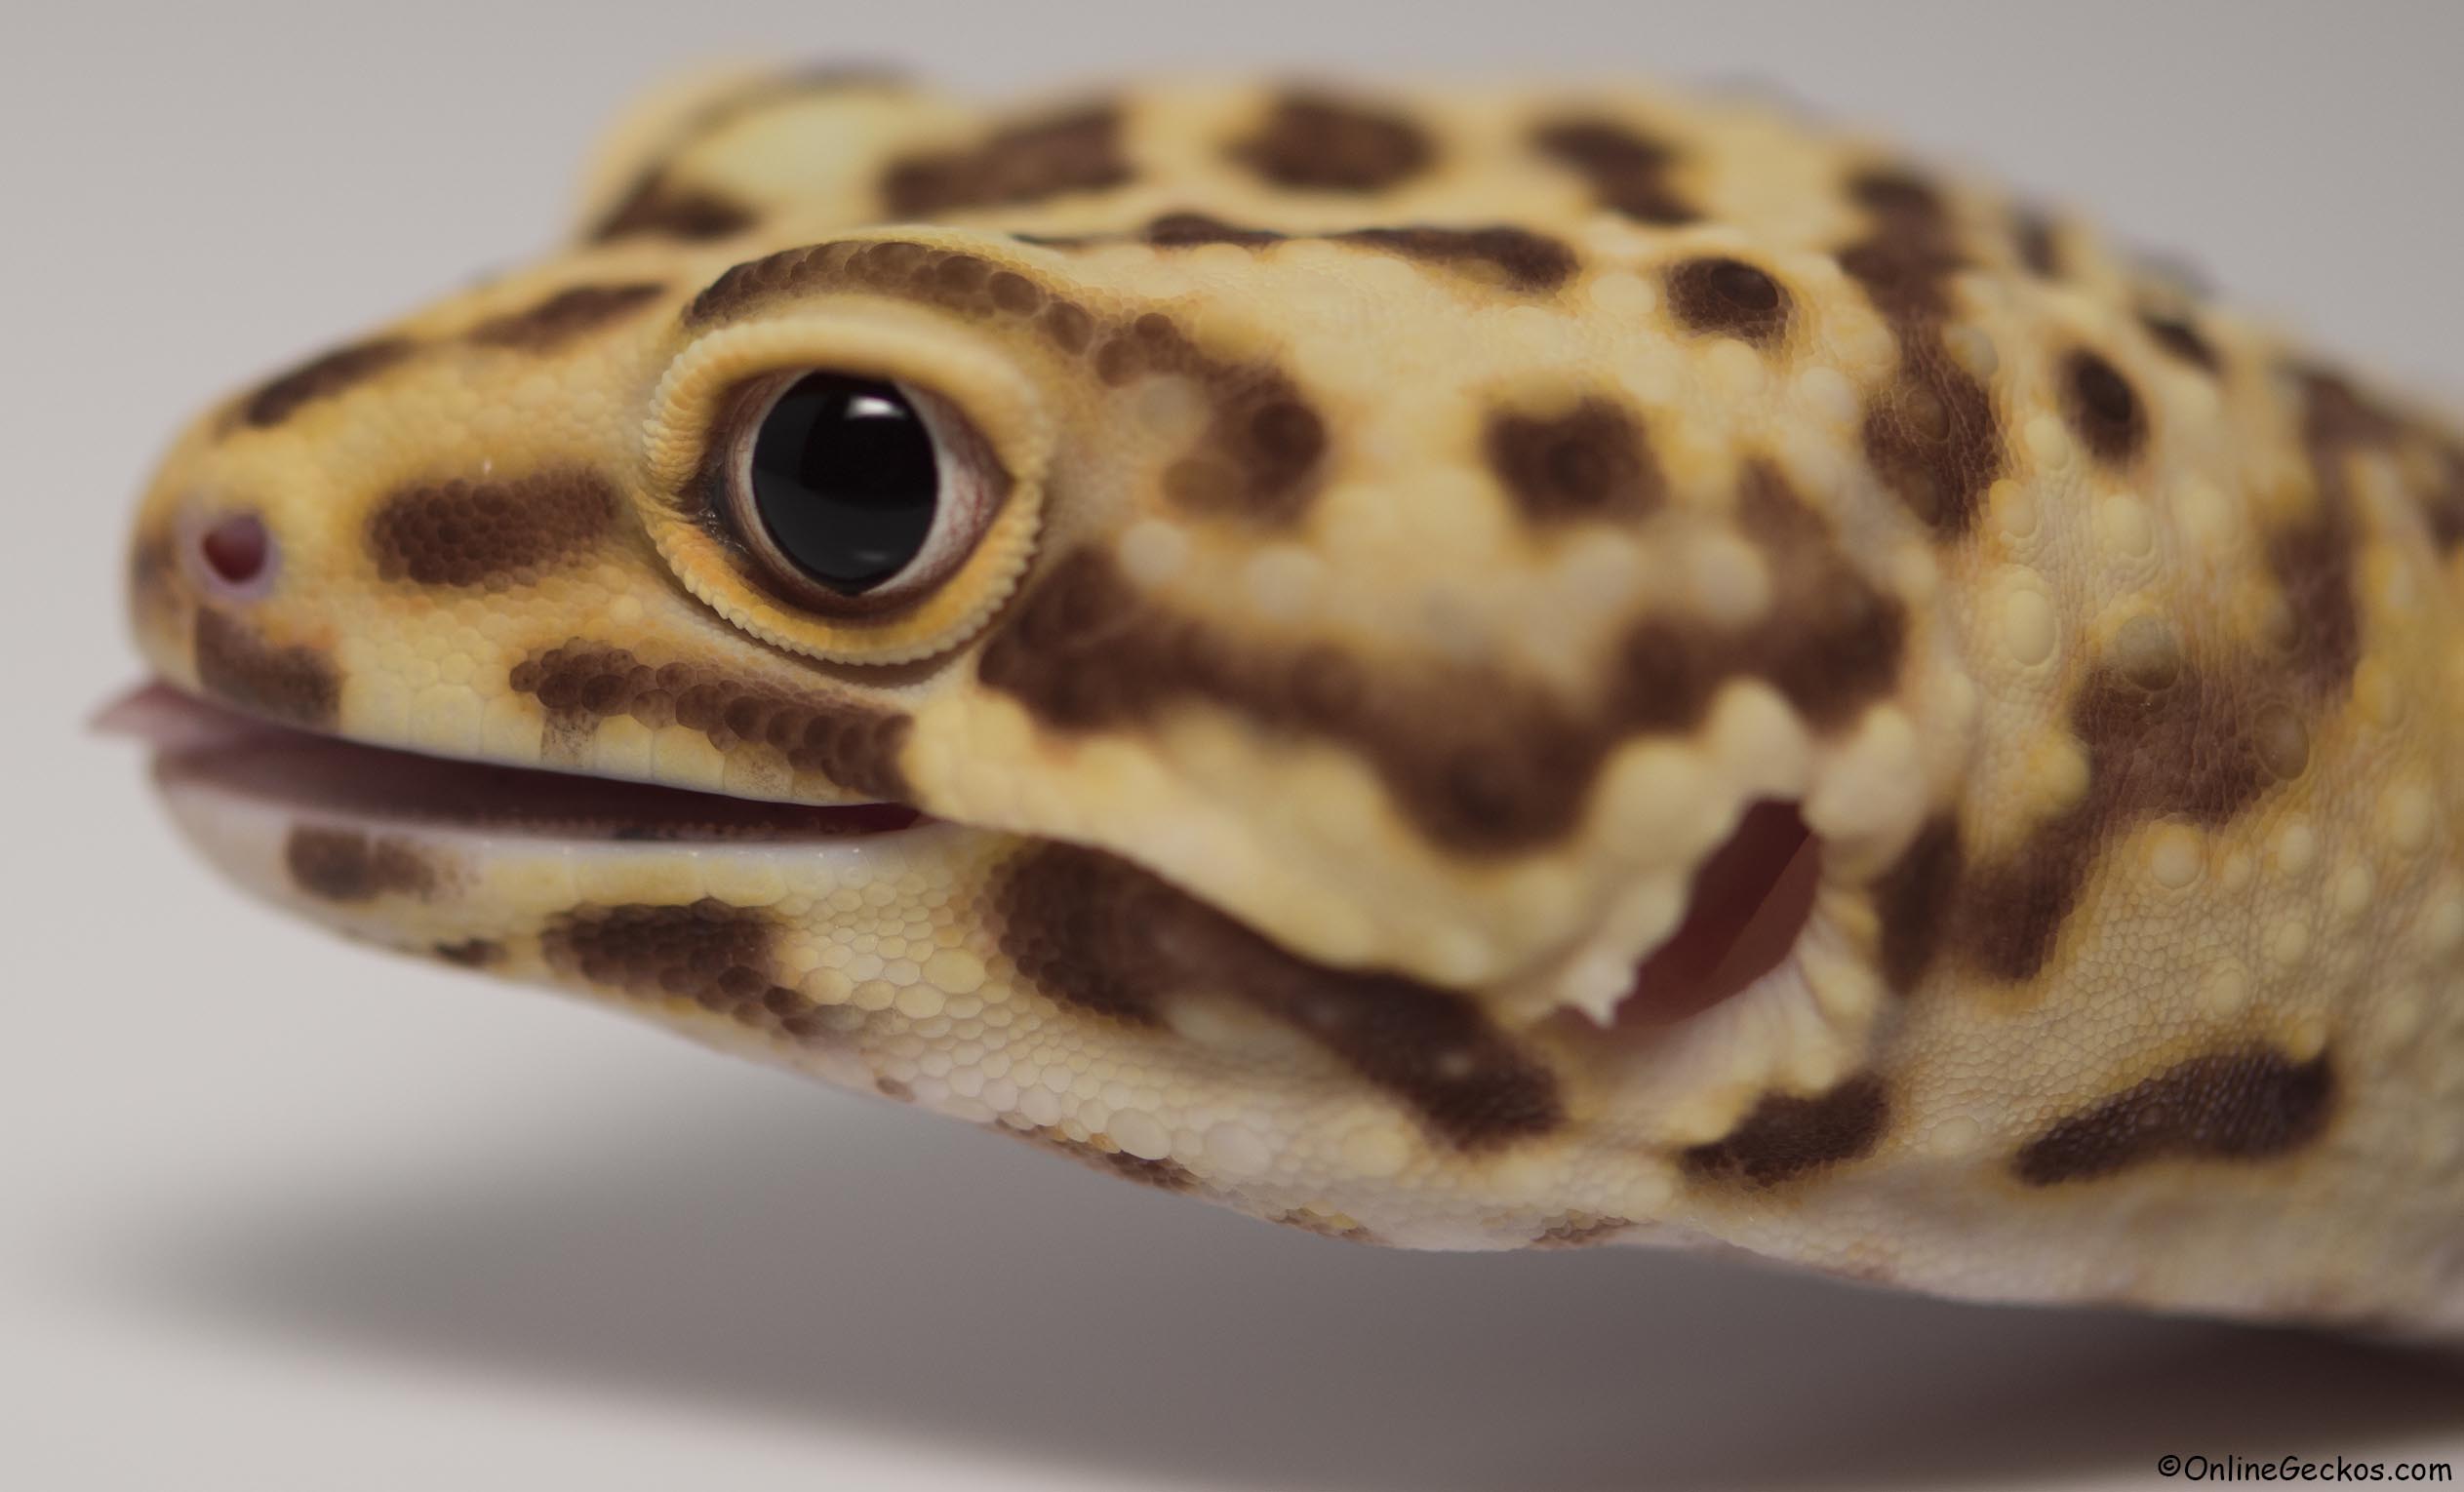 leopard gecko onlinegeckos.com ordering terms guarantees sales discounts